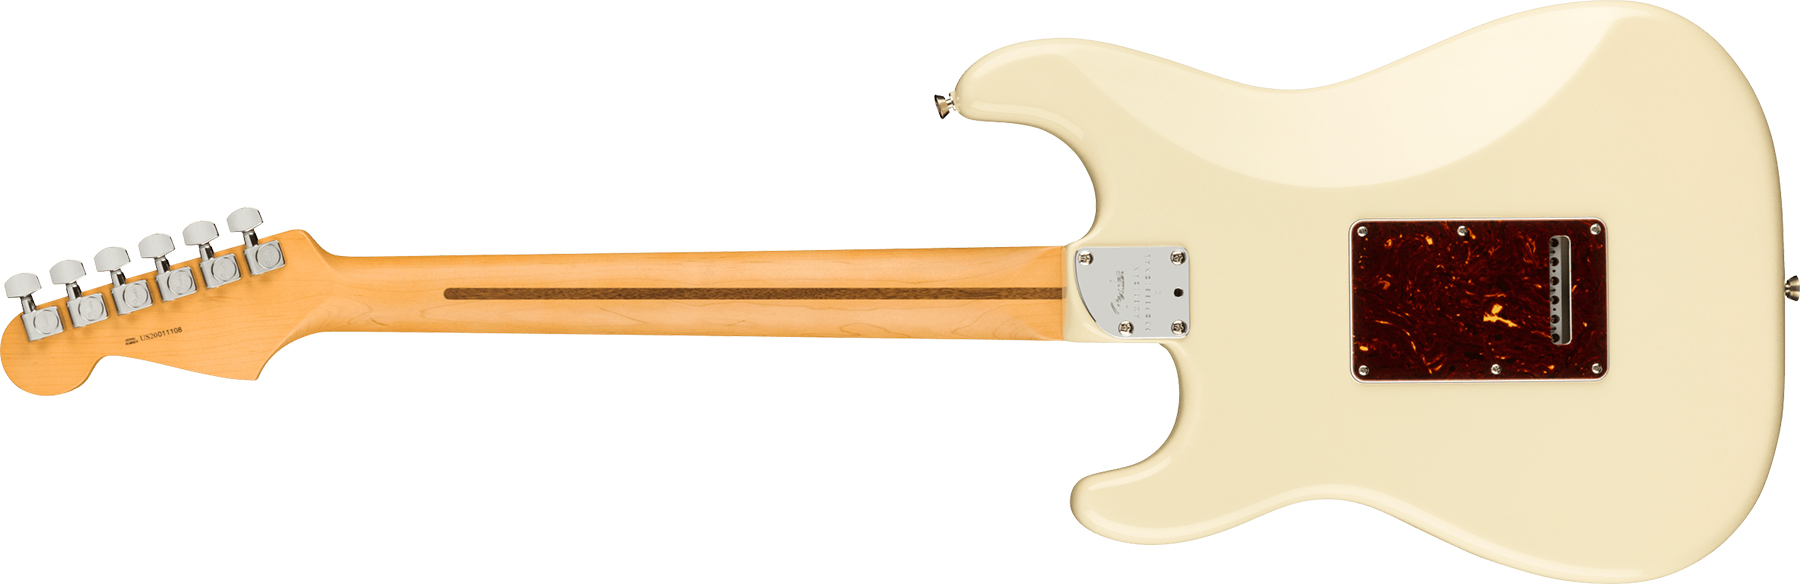 Fender Strat American Professional Ii Lh Gaucher Usa Mn - Olympic White - E-Gitarre für Linkshänder - Variation 1